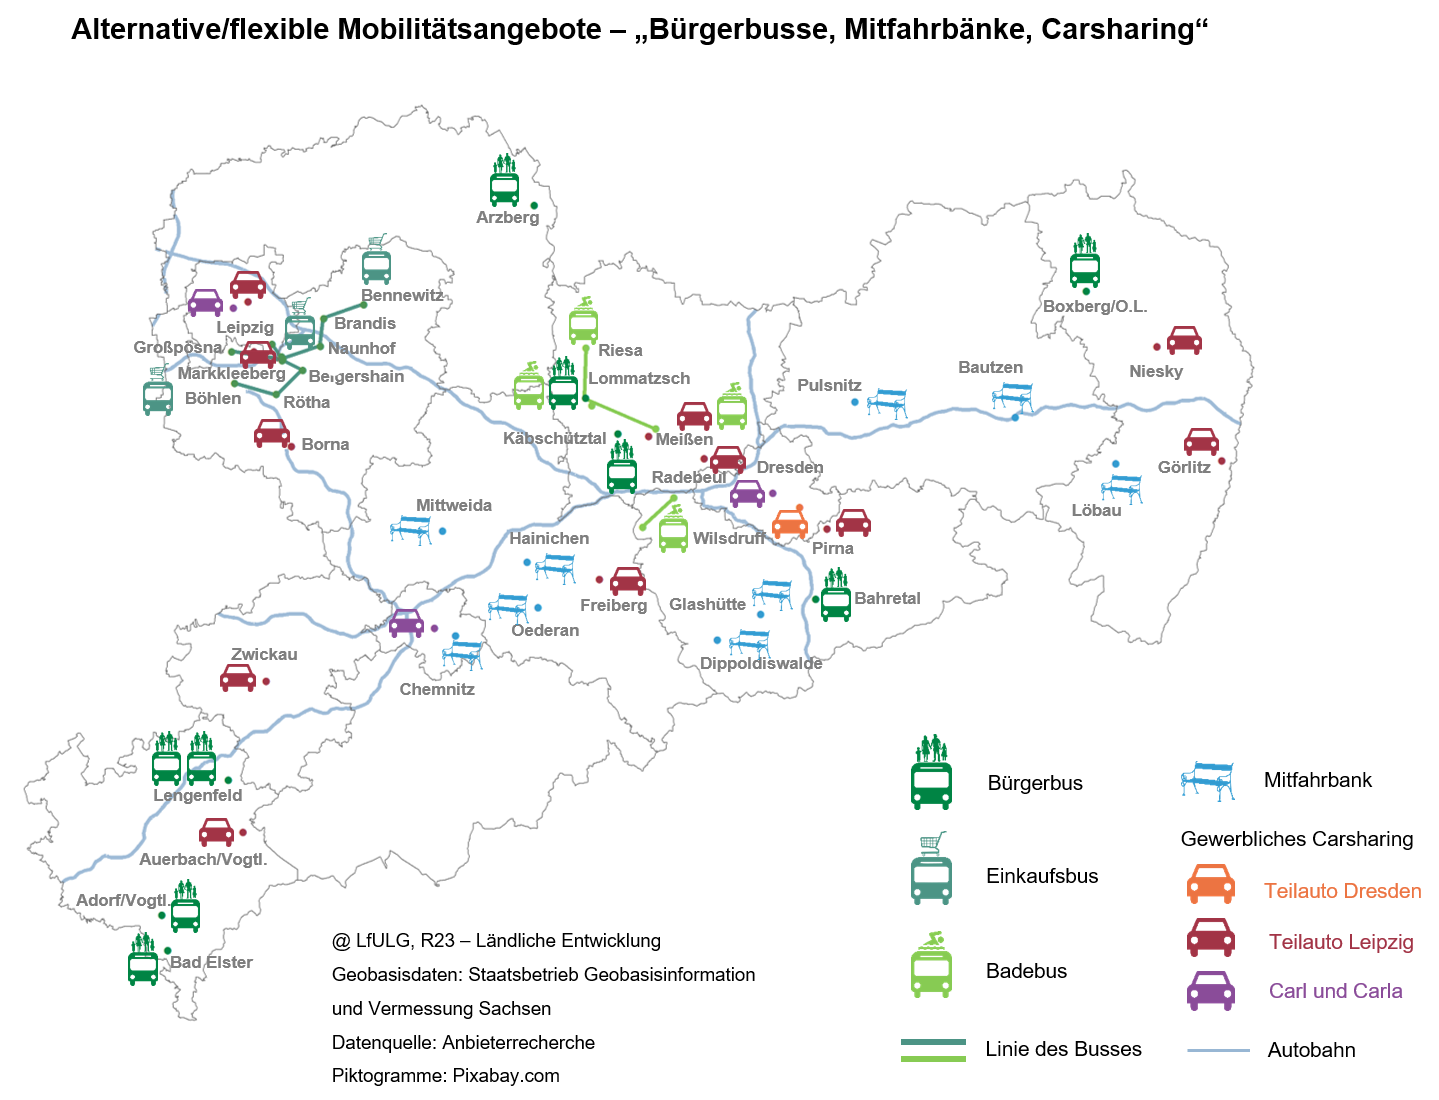 Sachsenkarte mit der Lage der alternativen Mobilitätsangebote mit verschiedenen Symbolen für Einkaufs-, Bade-, Bürgerbusse, Mitfahrbänke sowie Carsharing 